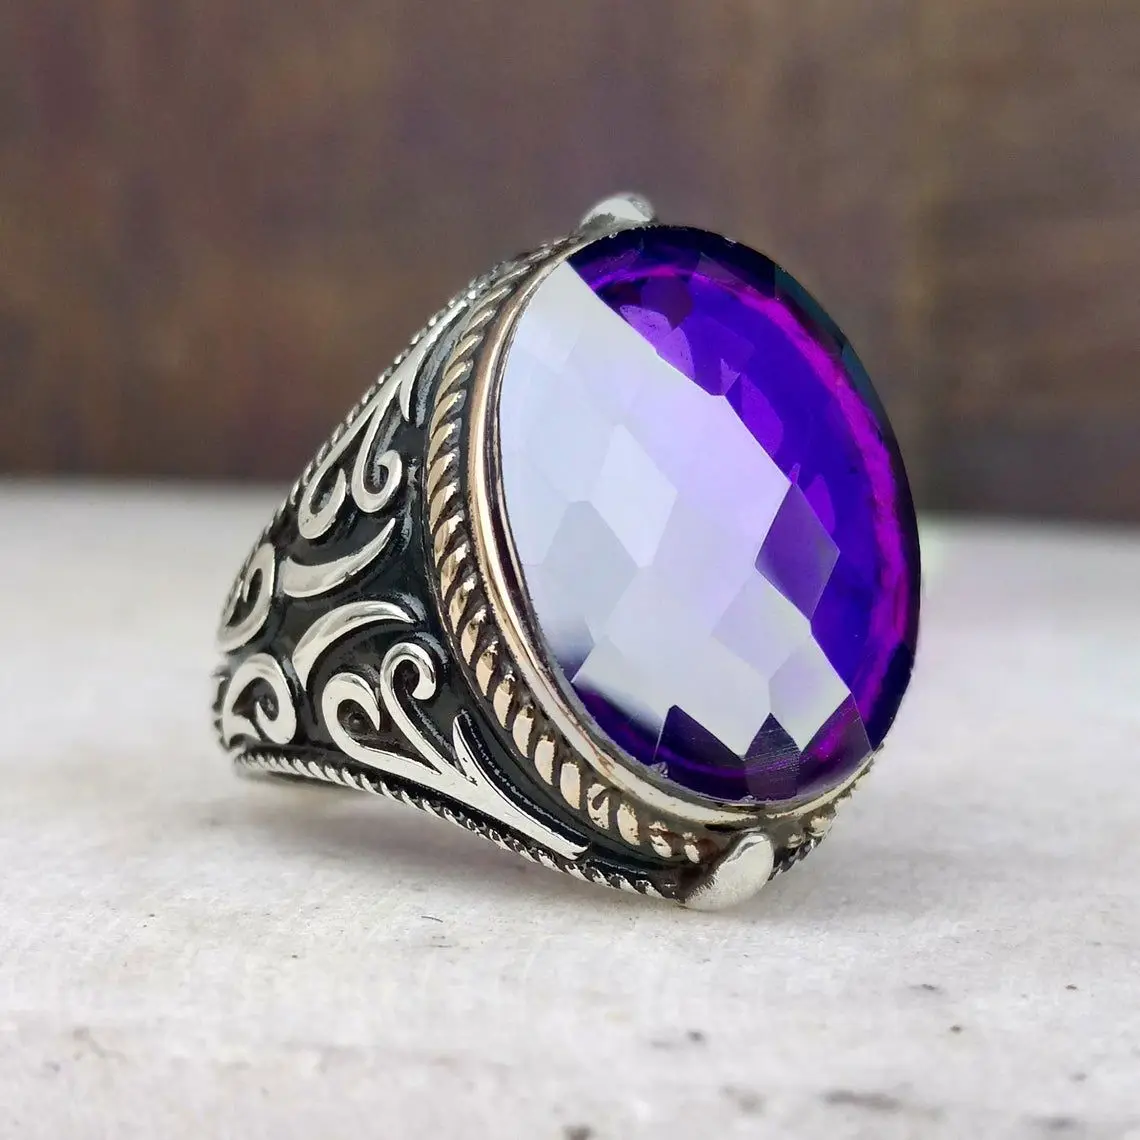 Прямое фабричное Винтажное Античное посеребренное Прозрачное кольцо со стразами, инкрустированное искусственным драгоценным камнем, Классическое кольцо 0